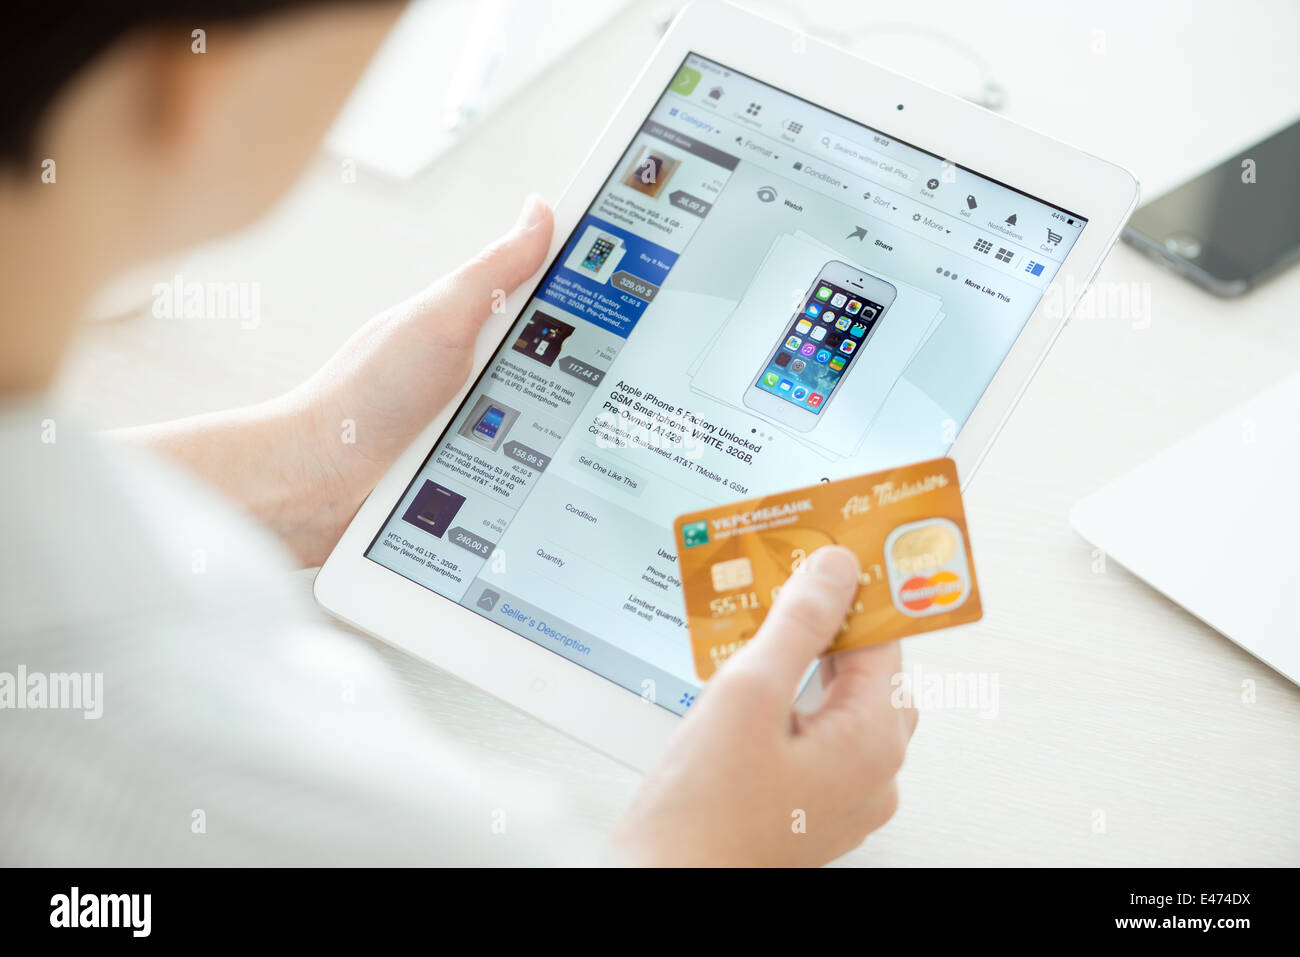 Persona in possesso di una carta di credito e cercando di acquistare un nuovo Apple iPhone 5 con applicazione di eBay su un marchio nuovo Apple iPad aria Foto Stock